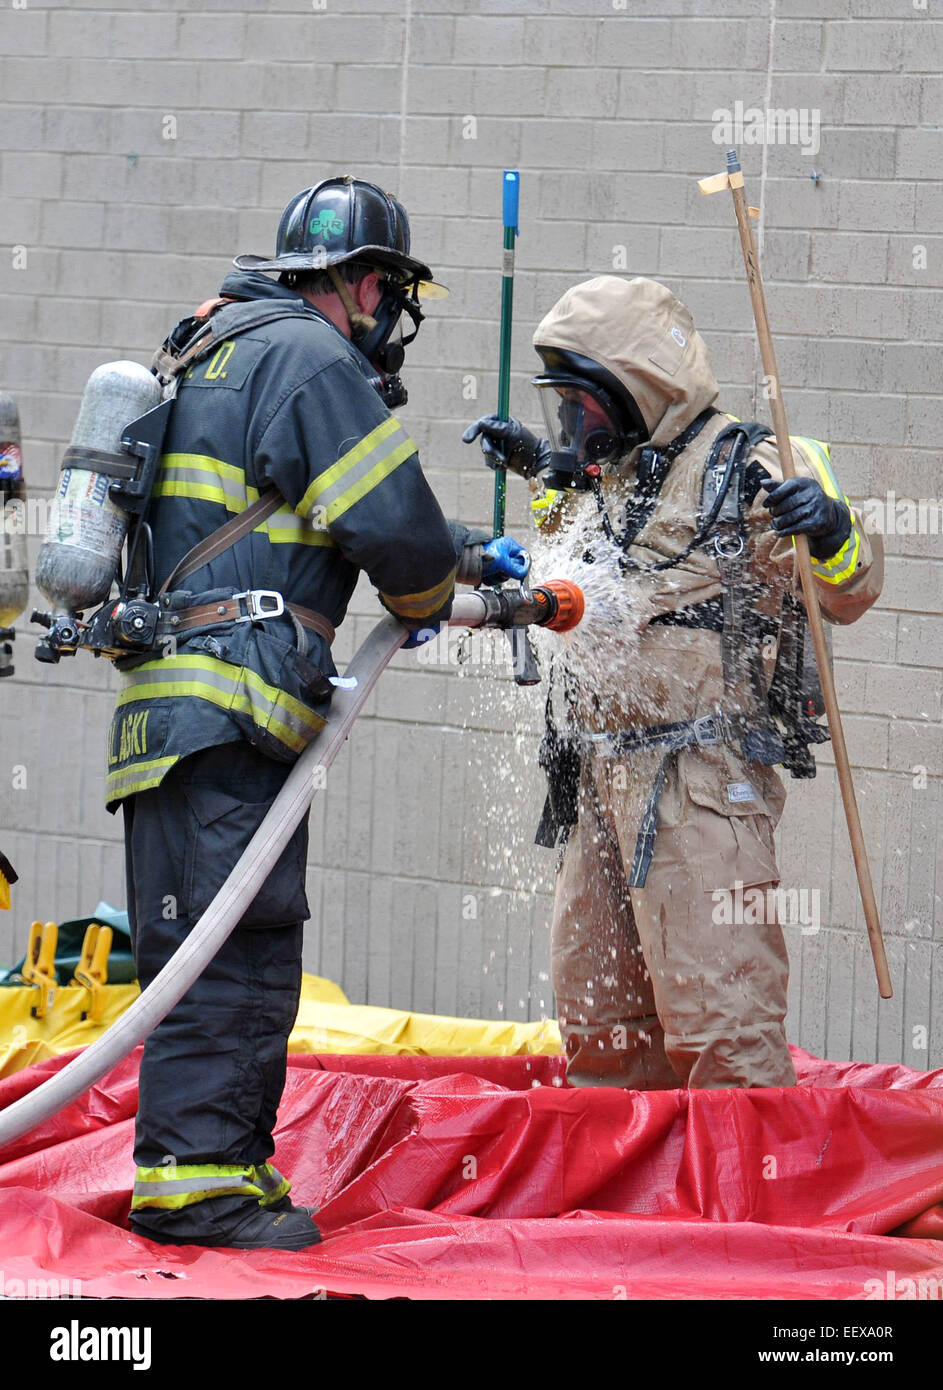 New Haven Feuerwehrleute in Hazmat passt sauber aus nach einem Spill in New Haven Walgreens (York Street), die 4-Personen ins Krankenhaus geschickt. 9. Juli 2014. CT-USA Stockfoto